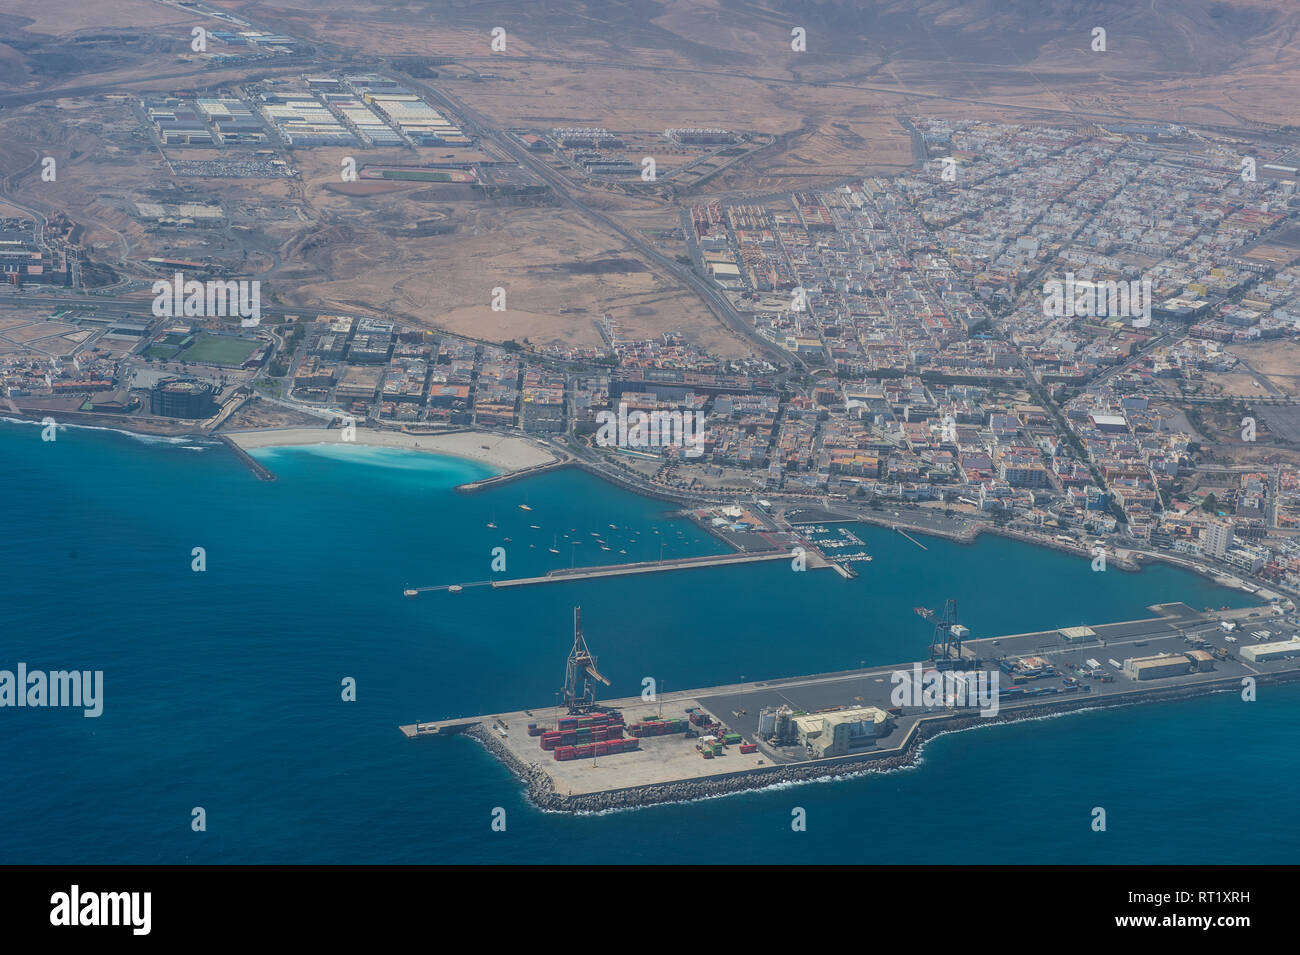 Spain, Canary Islands, Fuerteventura, aerial view of Puerto del Rosario Stock Photo